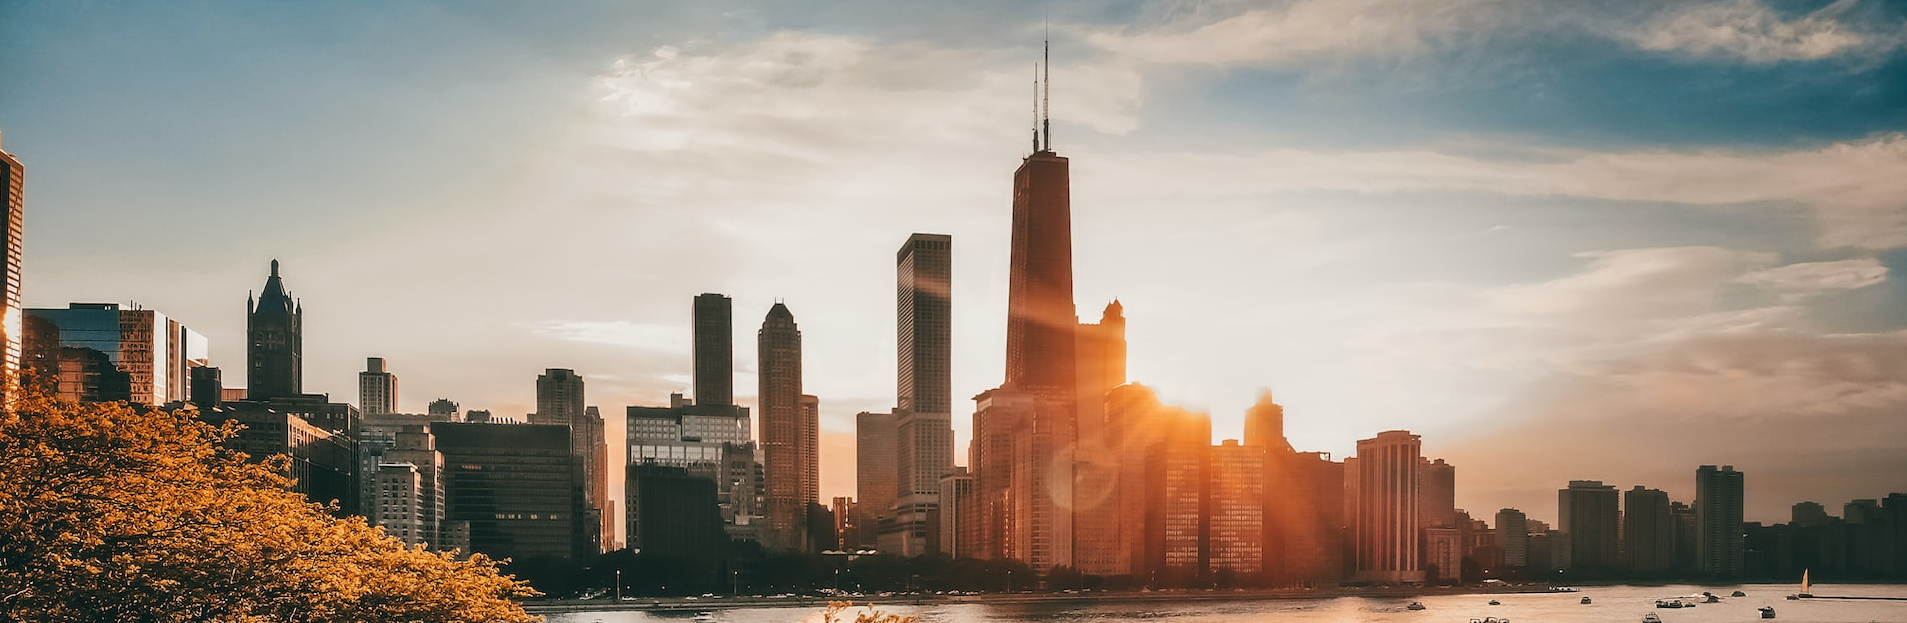 Skyline von Chicago bei Sonnenuntergang